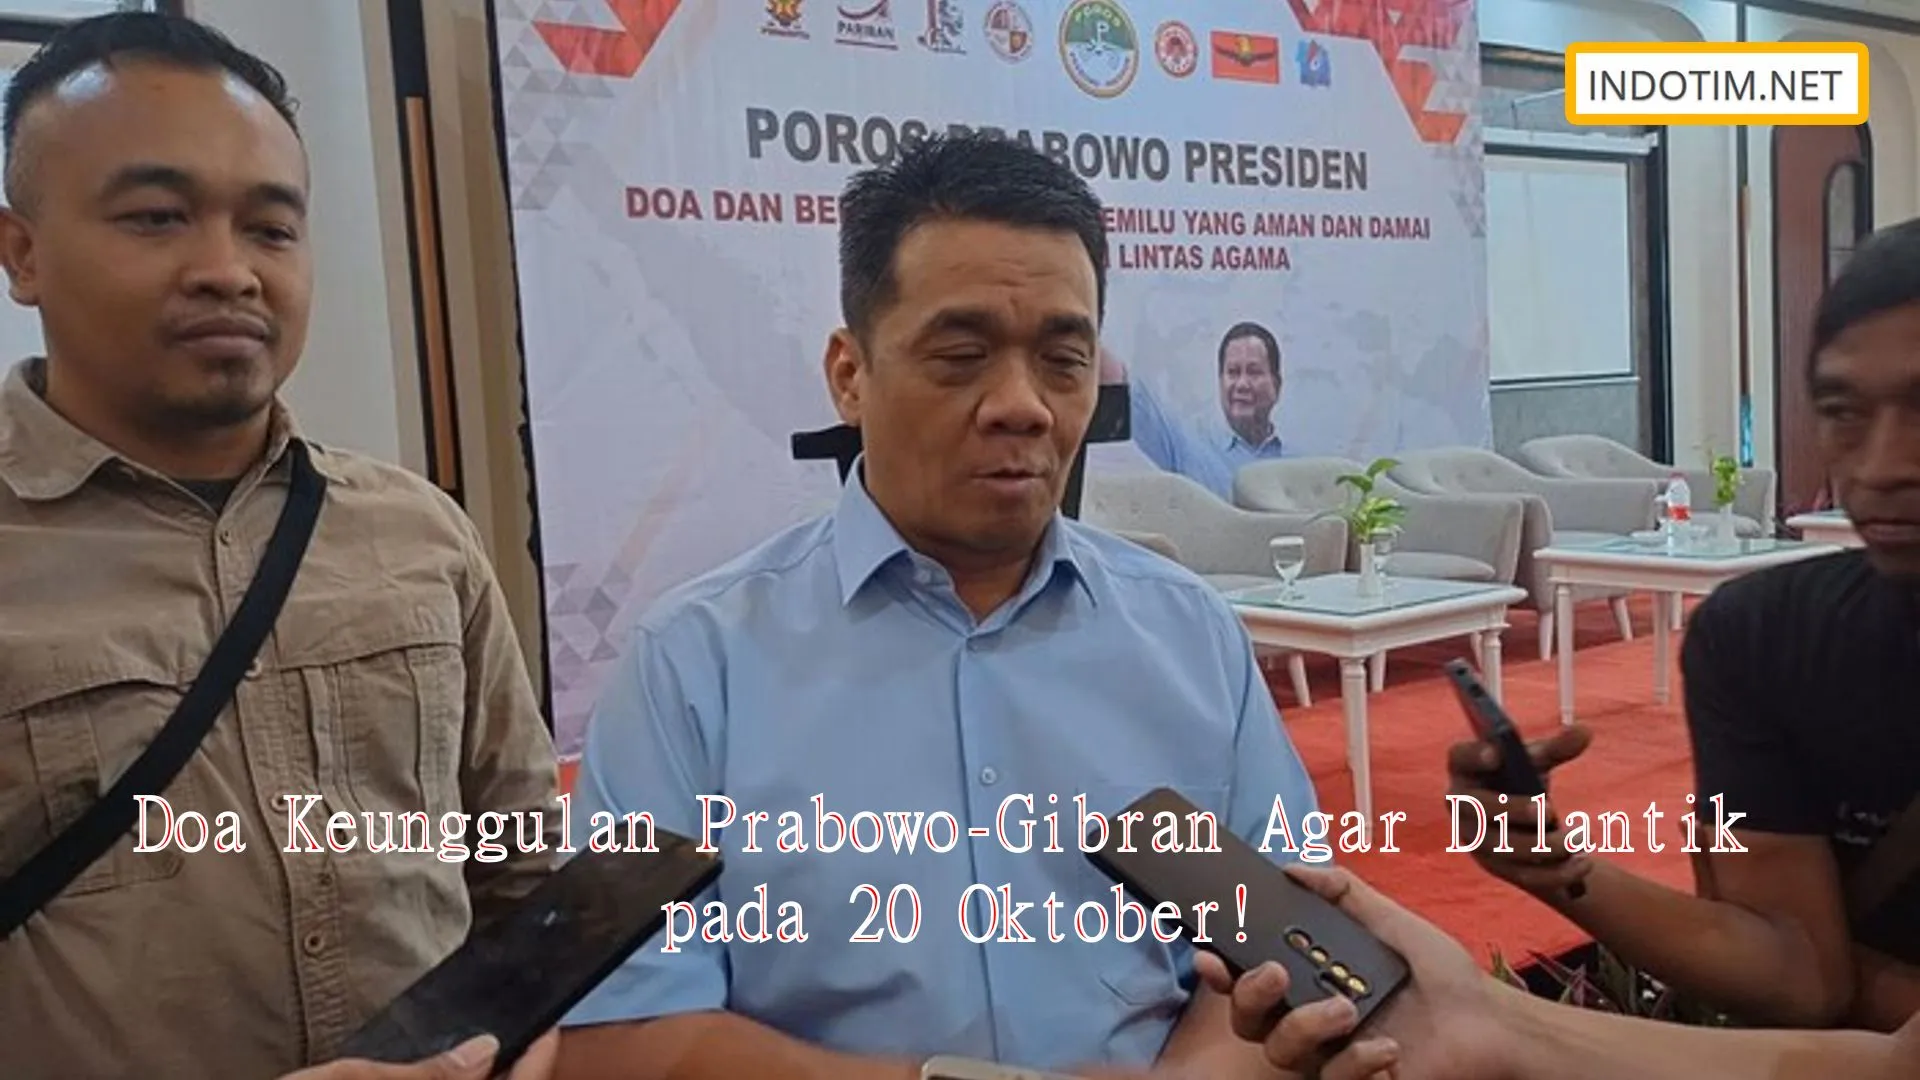 Doa Keunggulan Prabowo-Gibran Agar Dilantik pada 20 Oktober!